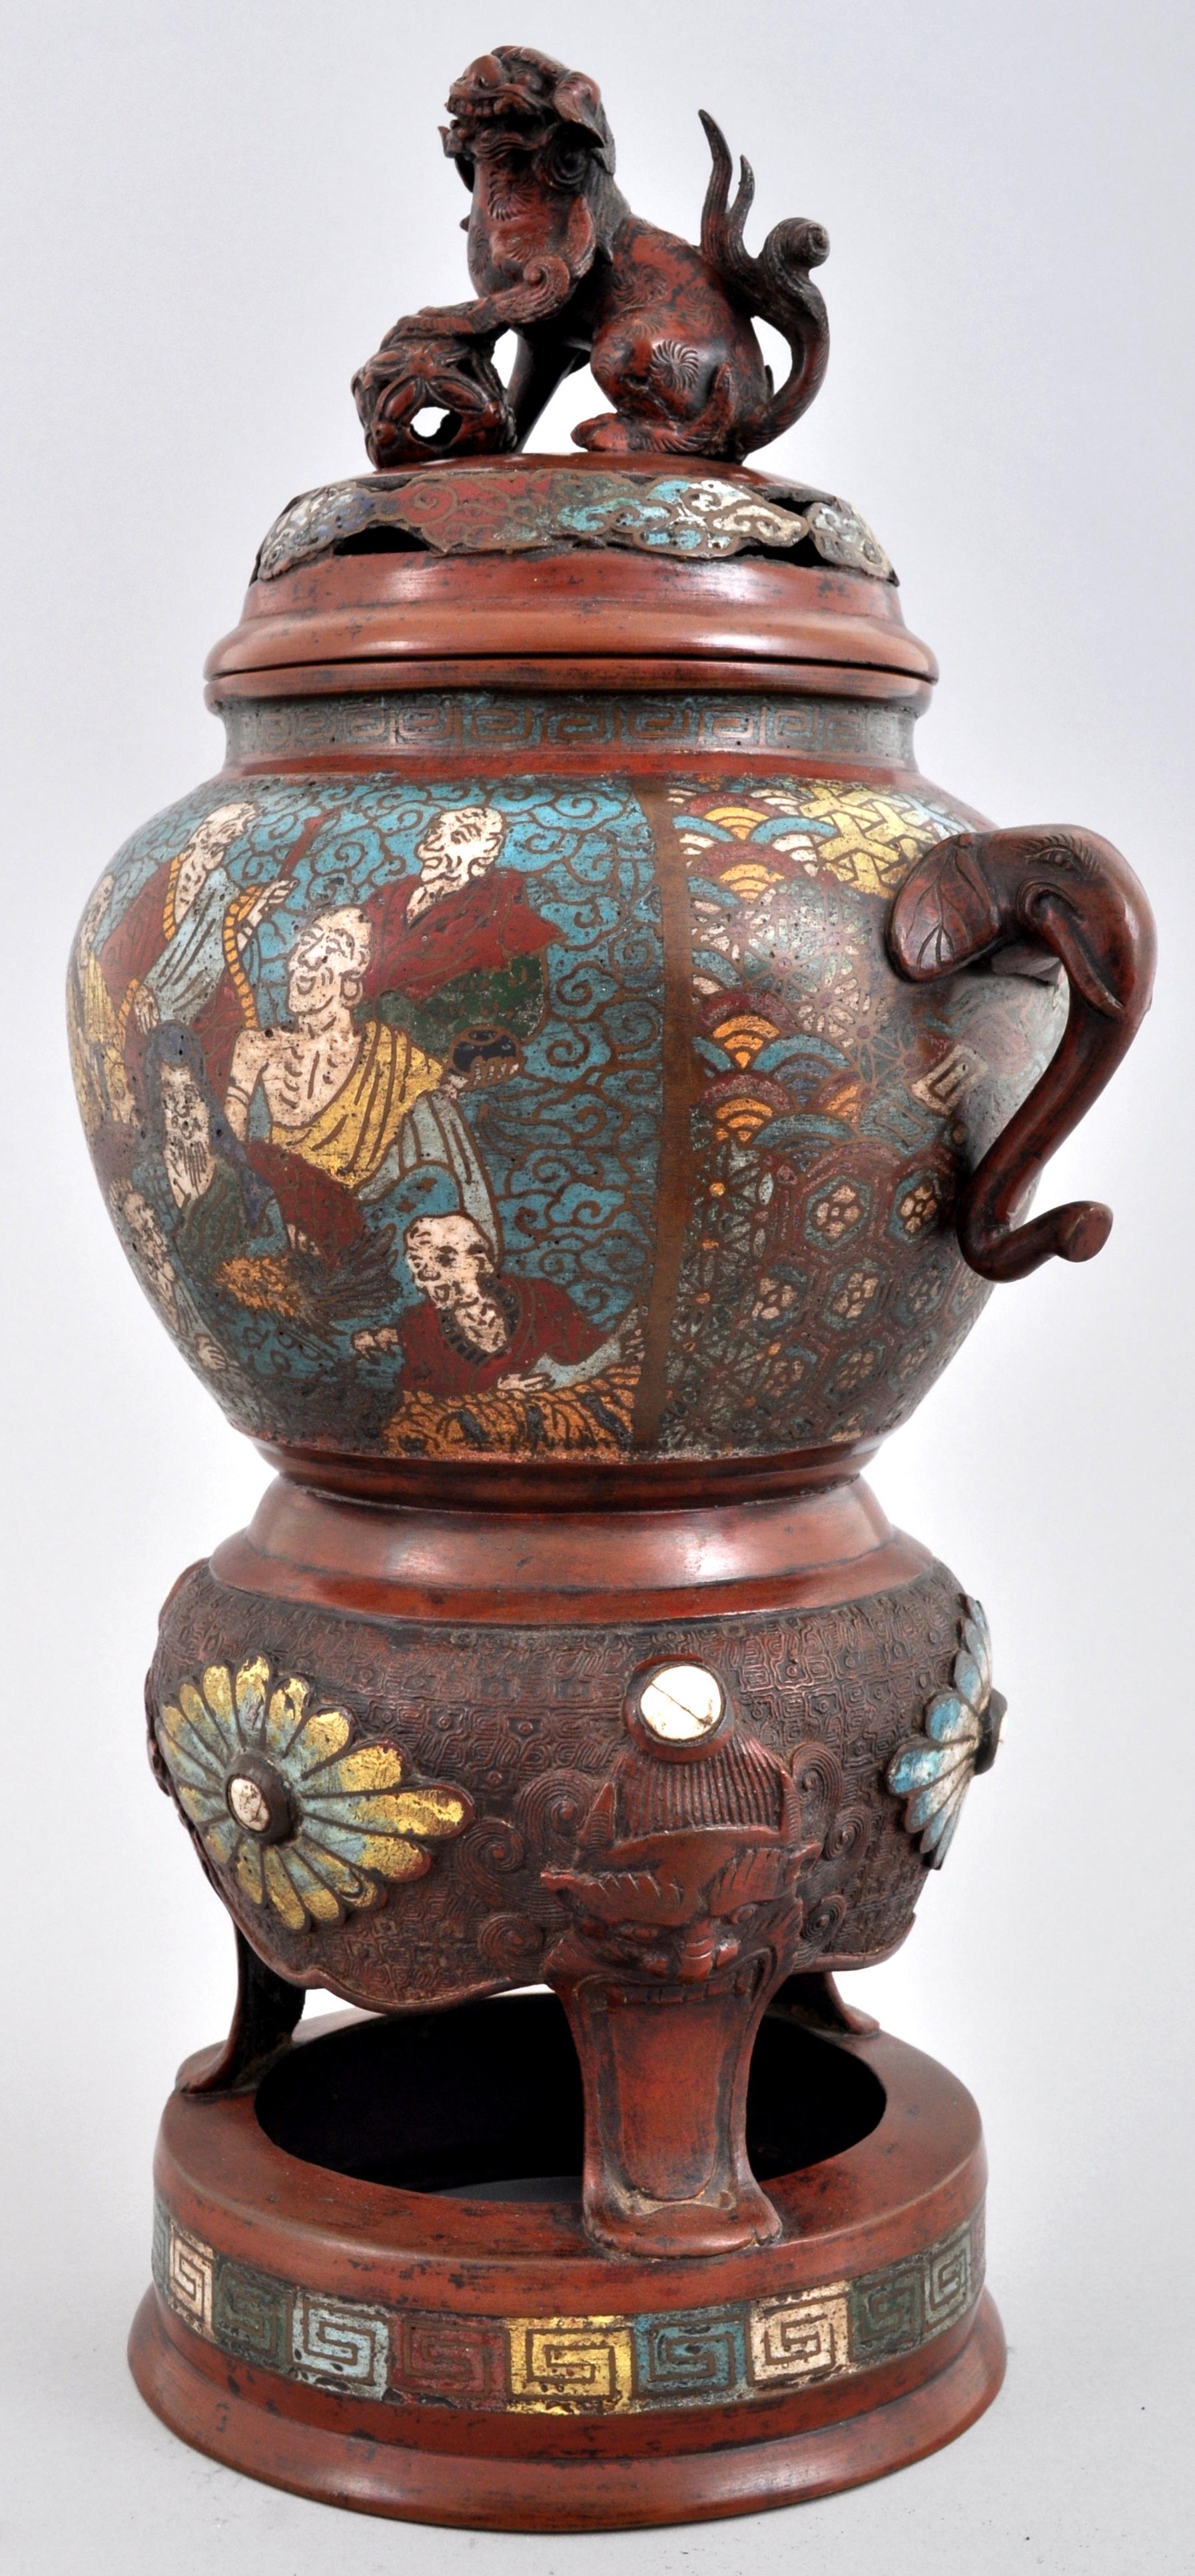 Ancien encensoir champlevé en bronze émaillé de style archaïque chinois, vers 1900. 
L'encensoir à couvercle est orné d'un fleuron en forme de chien de Foo mâle. Le dessous de l'encensoir est orné d'une décoration en émail représentant des immortels